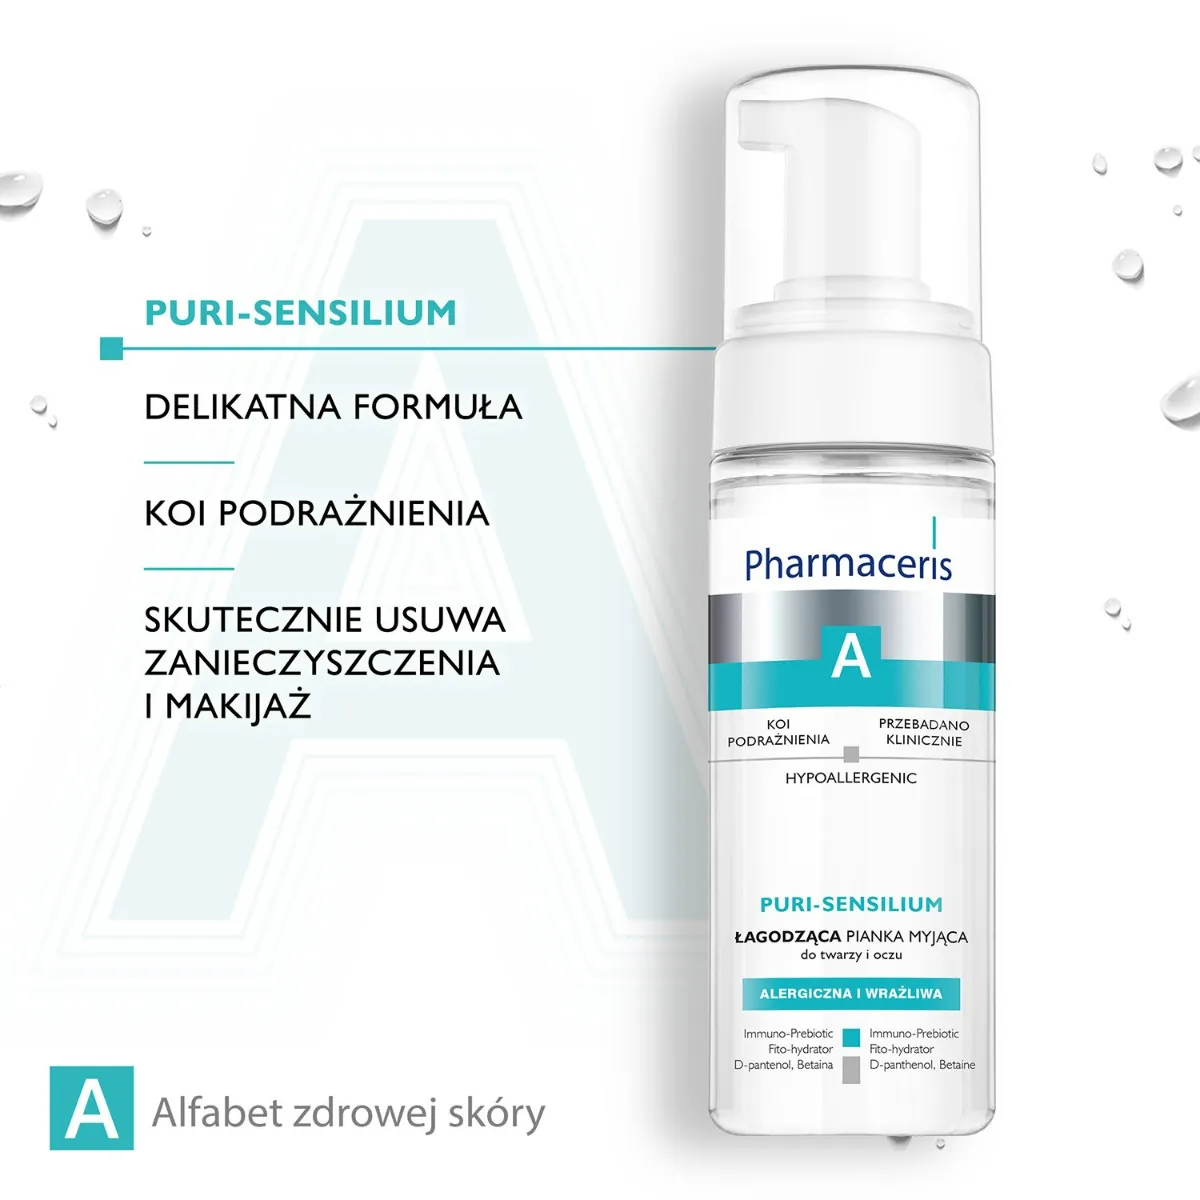 Pharmaceris A Puri-Sensilium łagodząca pianka myjąca do twarzy i oczu, 150 ml 